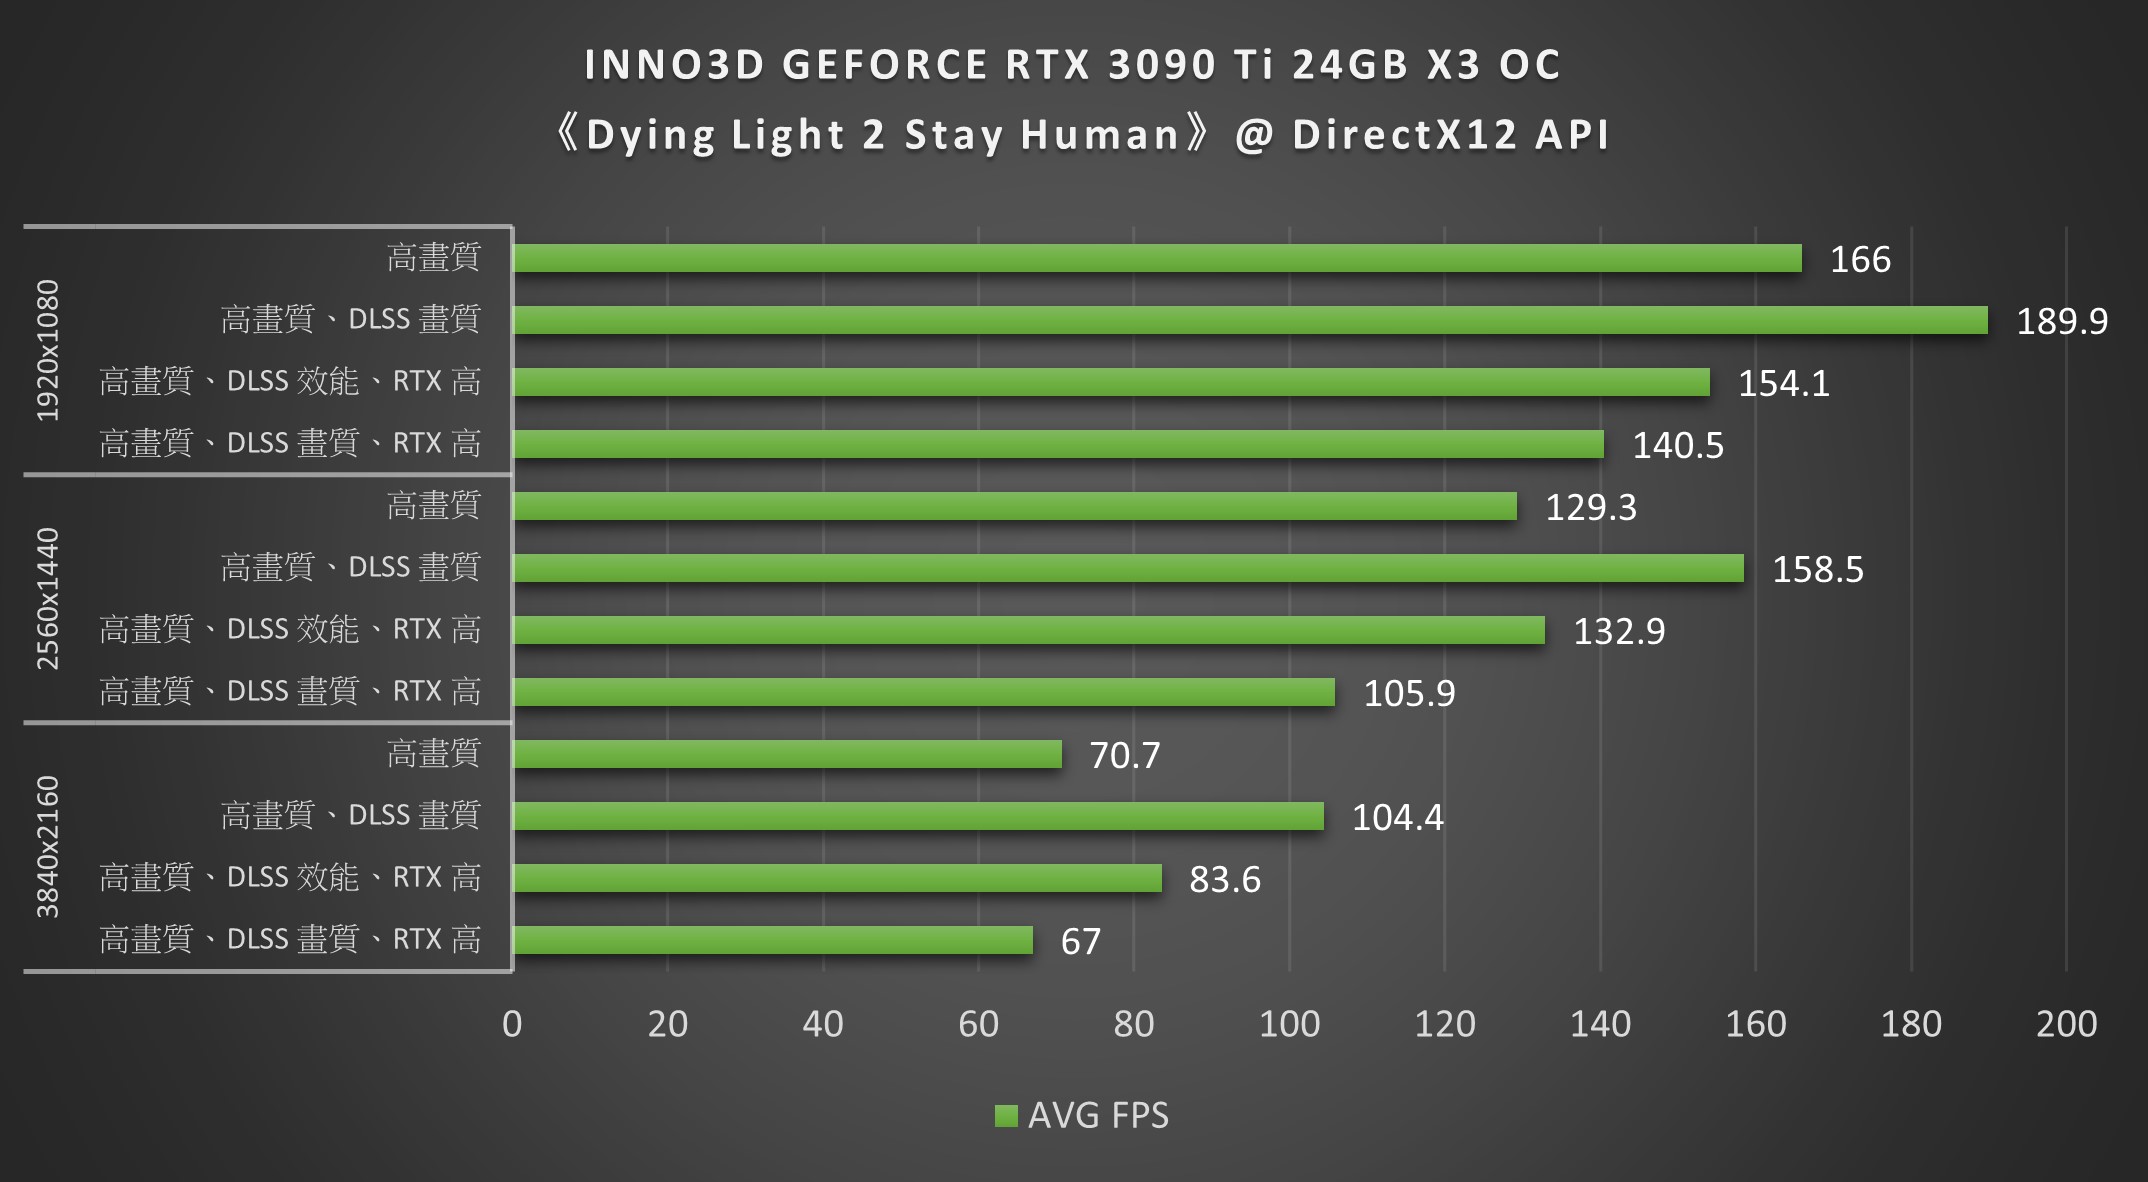 INNO3D GEFORCE RTX 3090 Ti 24GB